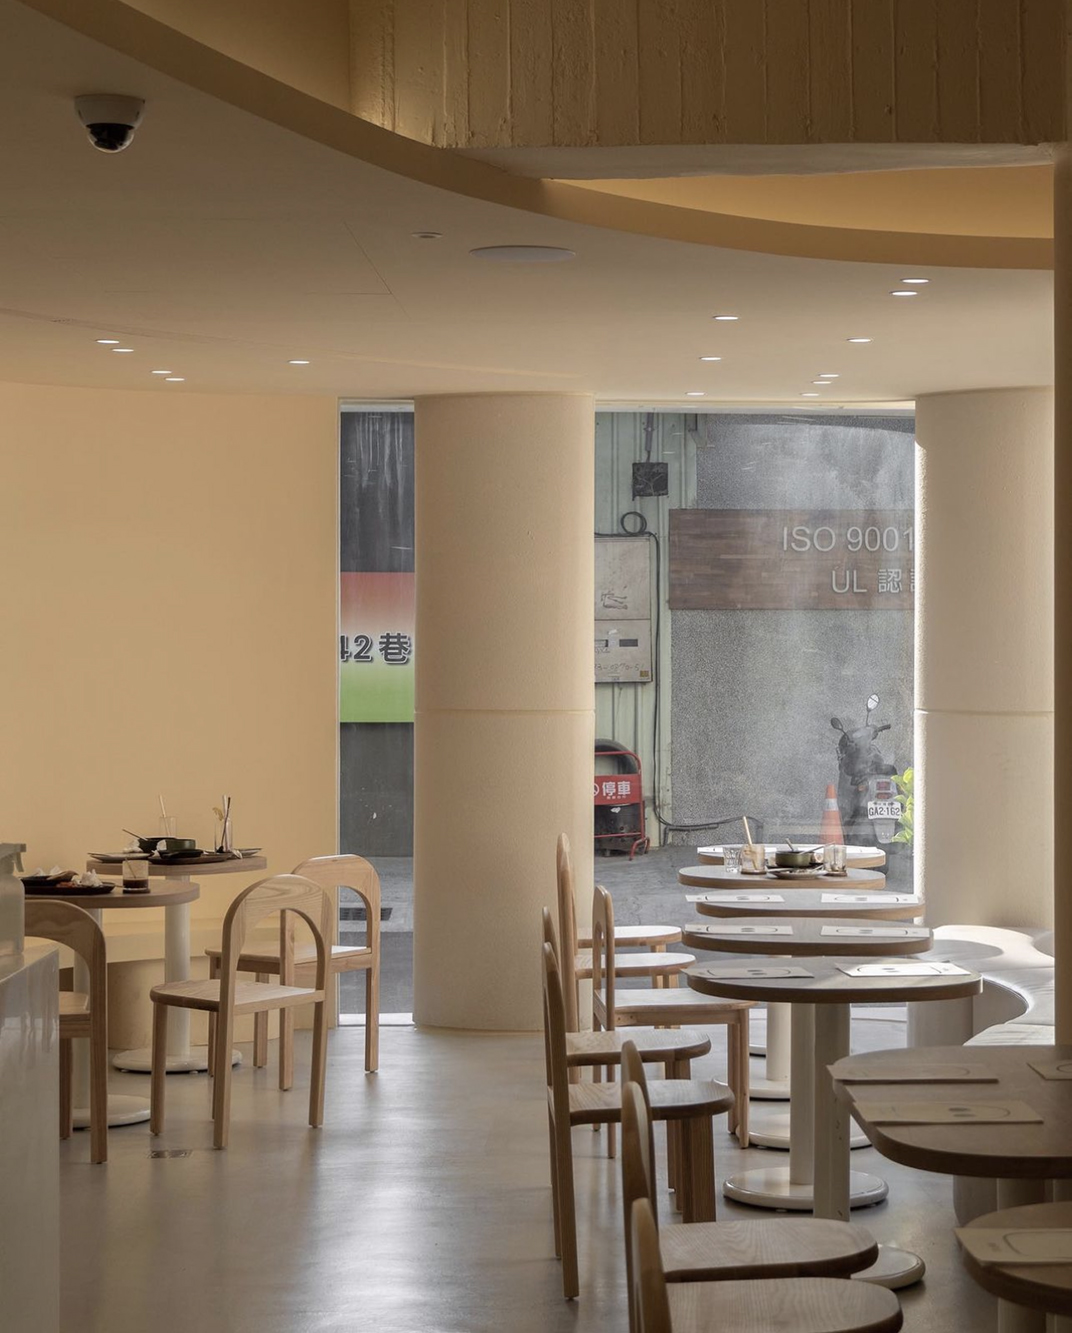 咖啡店pssststudio 台湾 深圳 上海 北京 广州 武汉 咖啡店 餐饮商业 logo设计 vi设计 空间设计